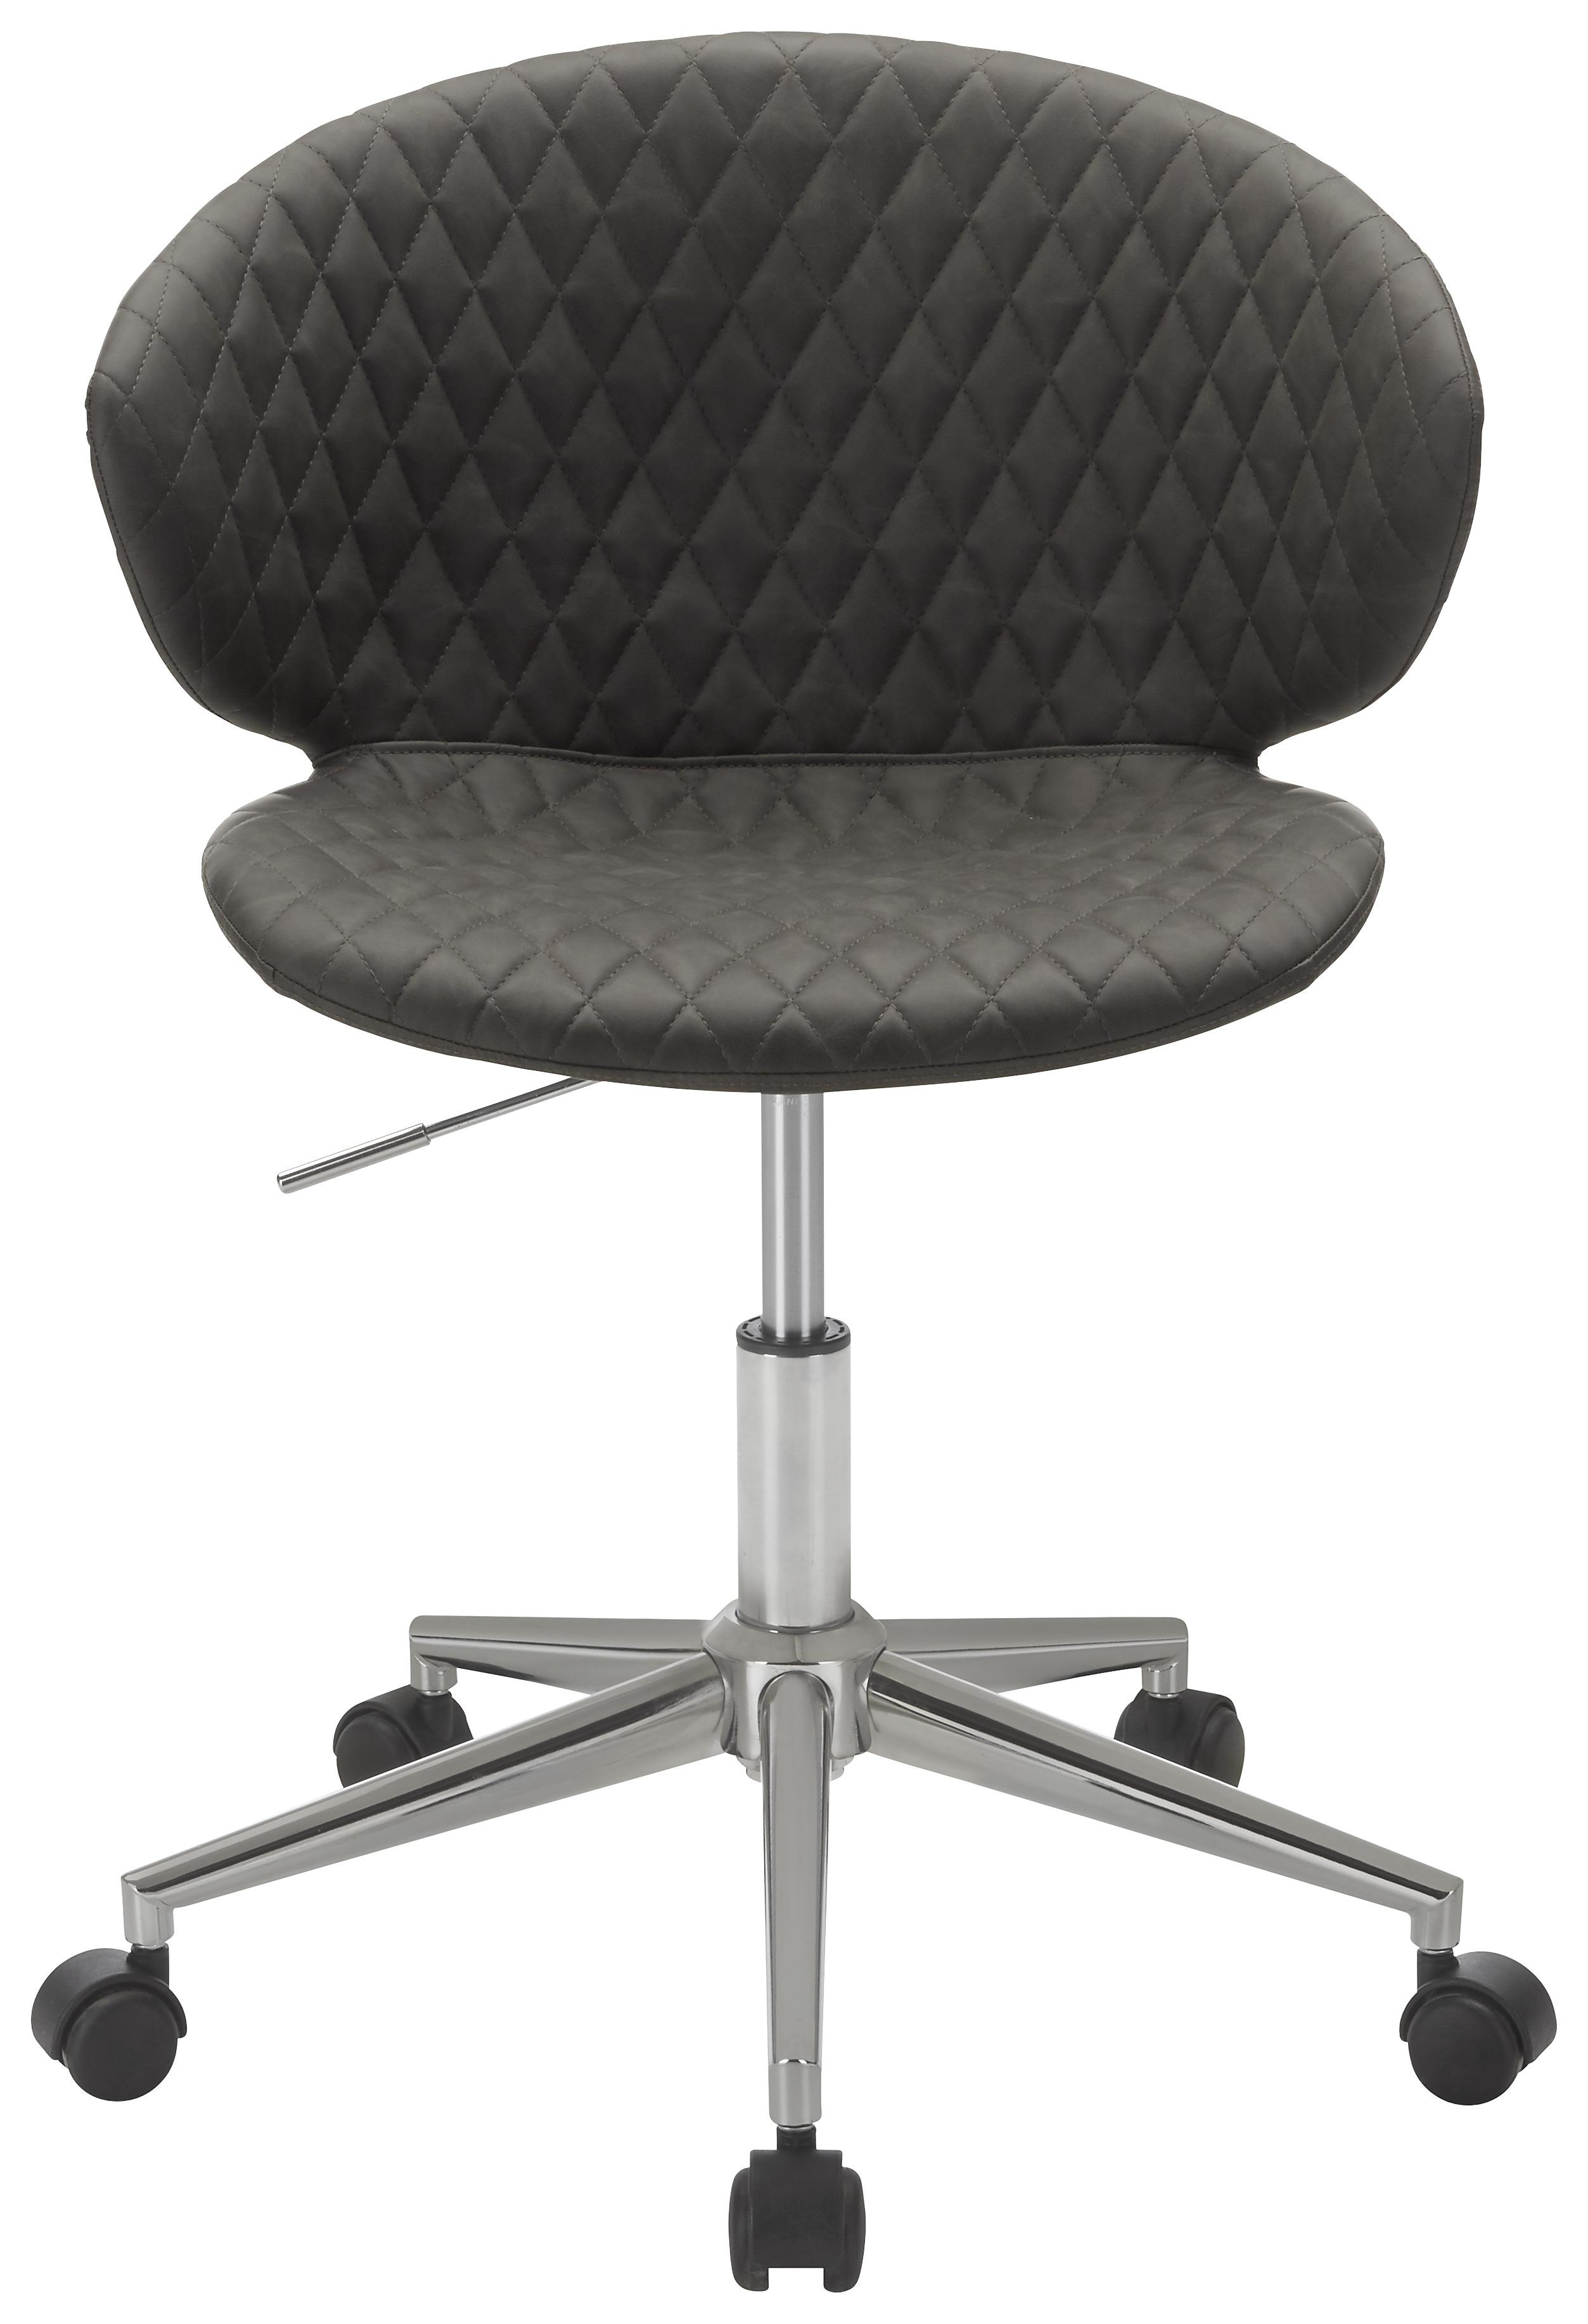 Otočná Židle Stella - šedá/barvy chromu, Lifestyle, kov/textil (56/73-82,5/49cm) - Modern Living